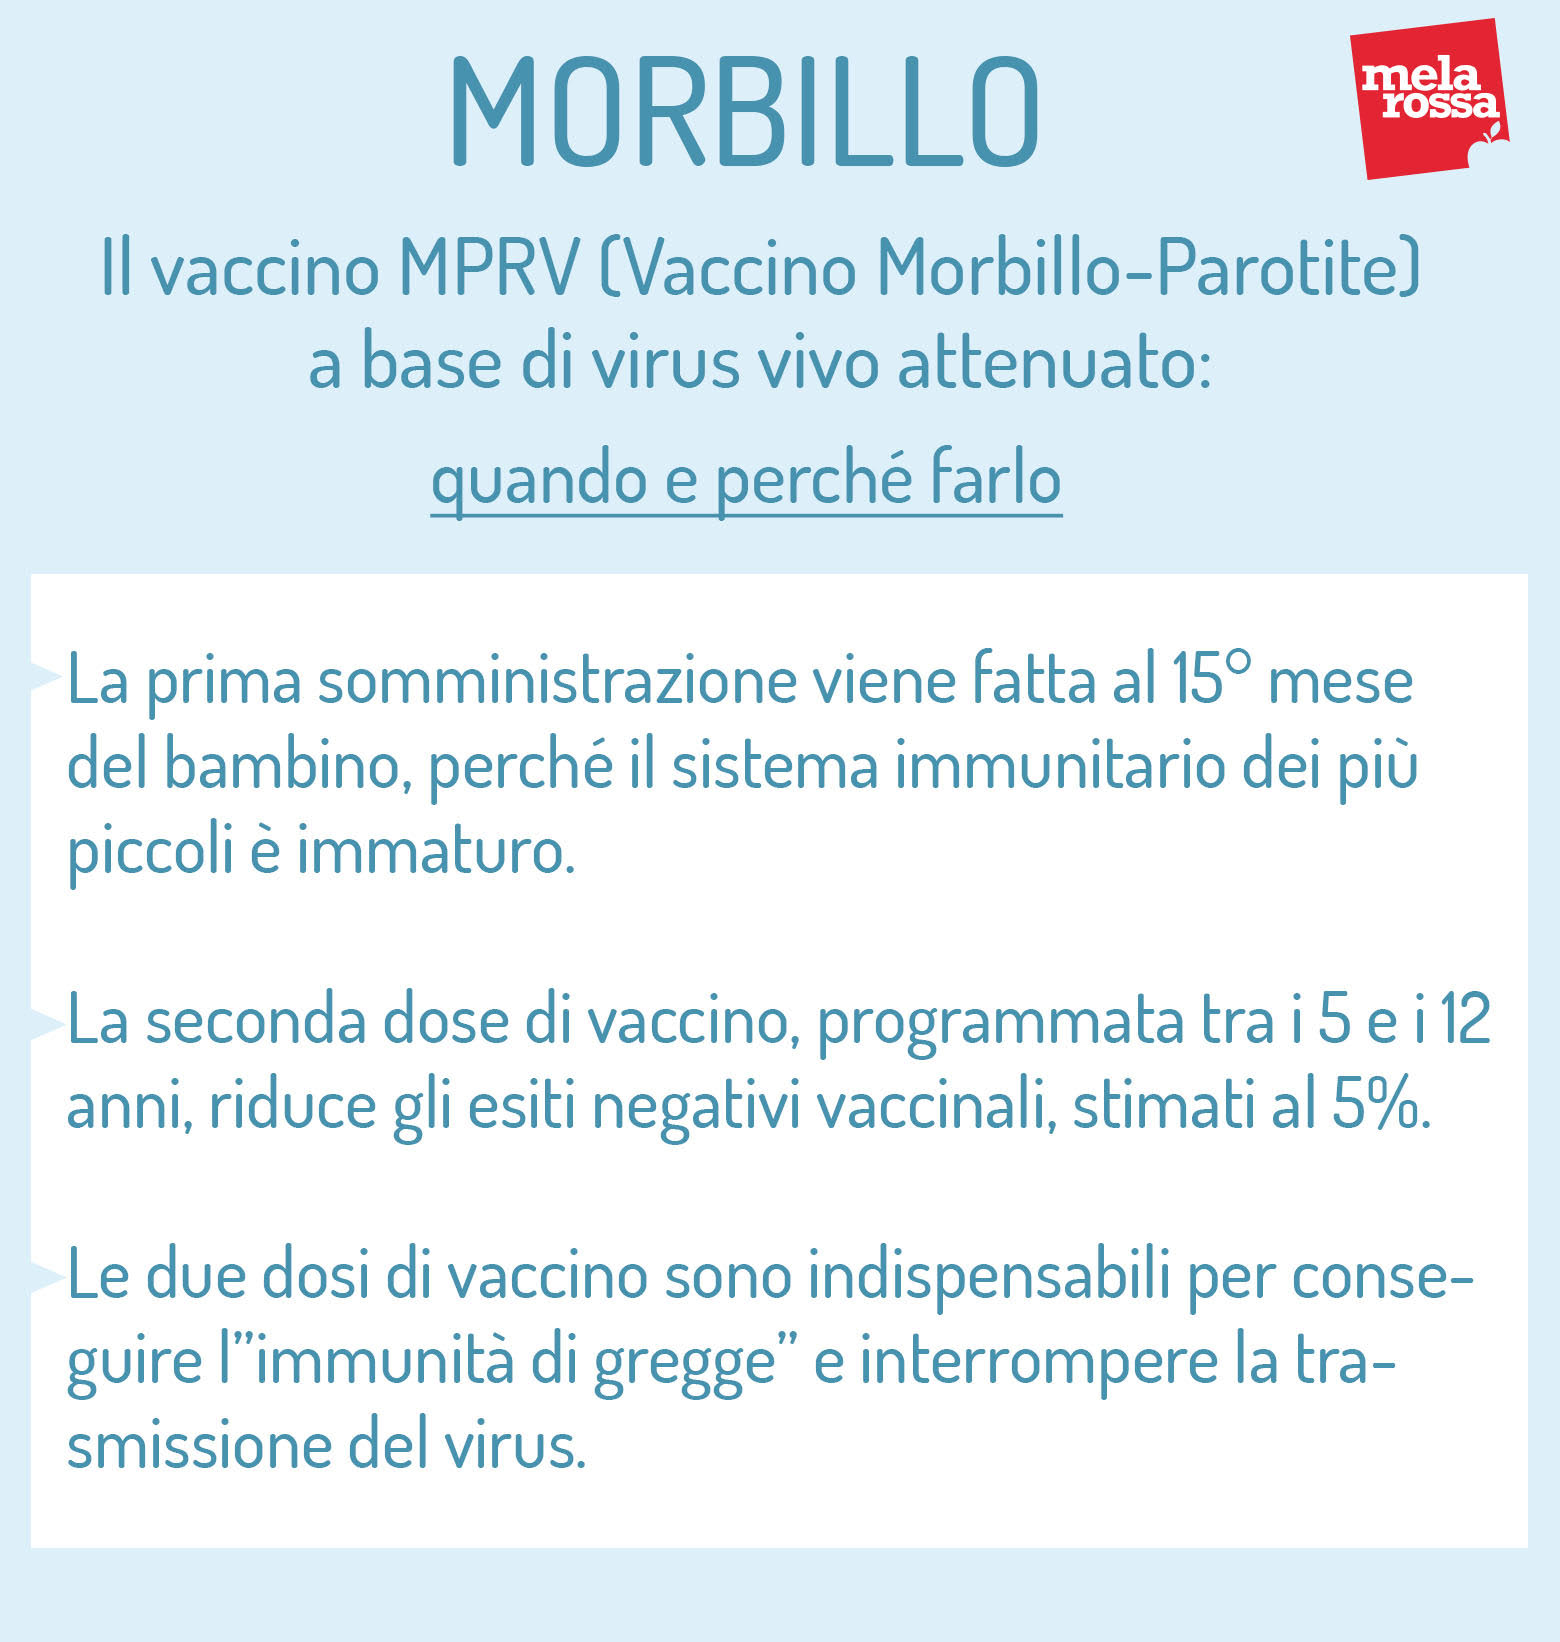 morbillo: vaccino